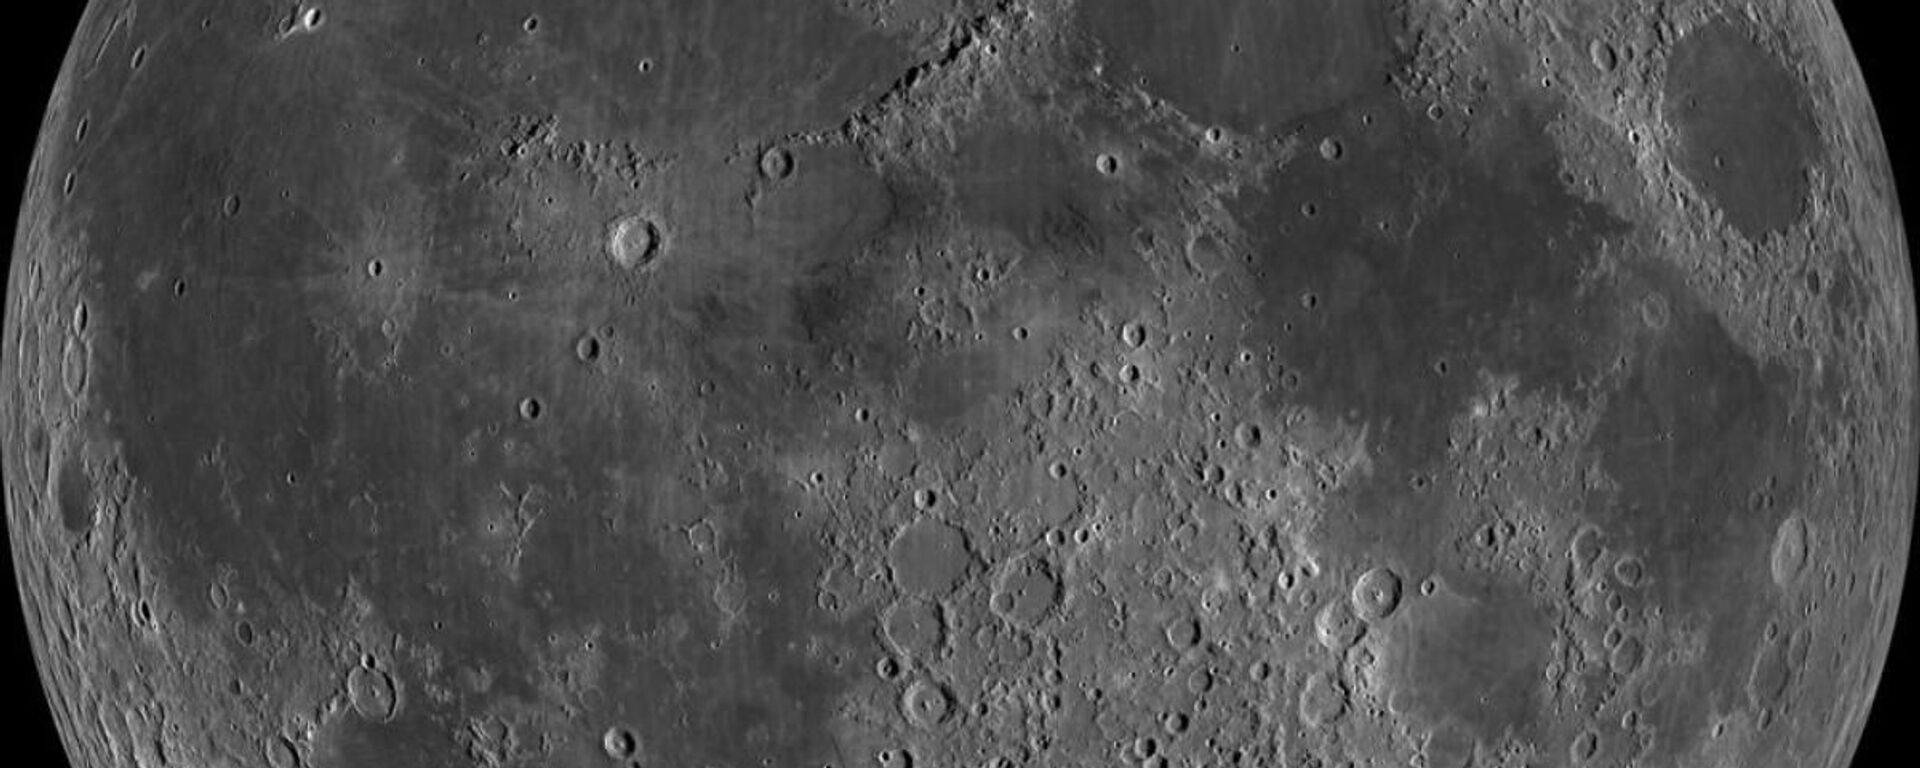 Поверхность Луны - Sputnik Ўзбекистон, 1920, 16.06.2021